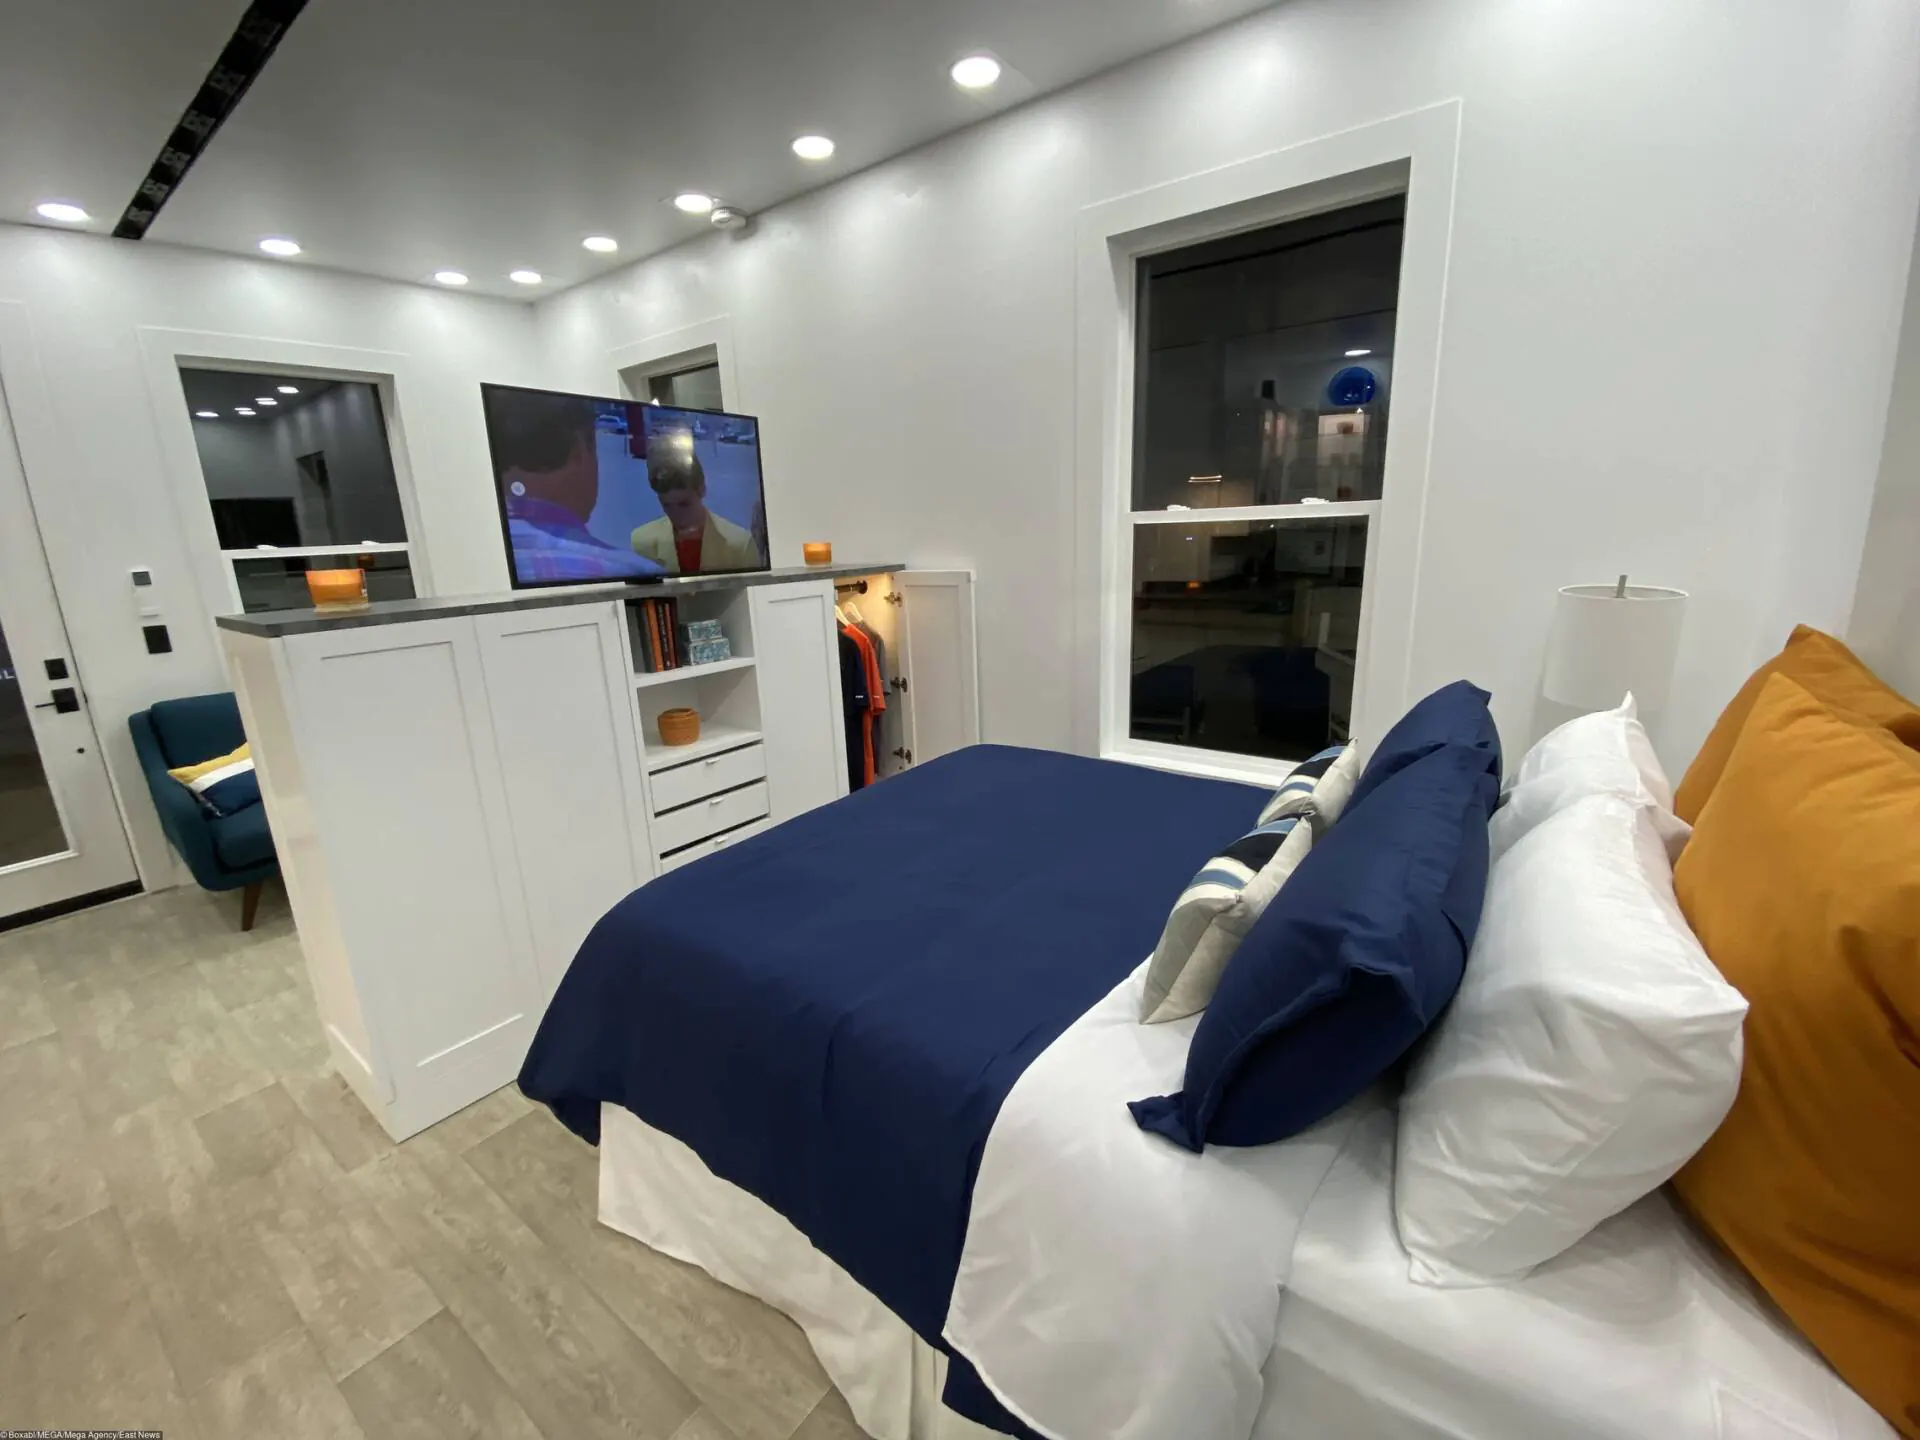 Phòng ngủ ngăn cách với phòng khách bằng kệ tủ thông minh, vừa là nơi để quần áo, vừa là kệ tivi có thể linh hoạt xoay giữa 2 không gian khách - ngủ 